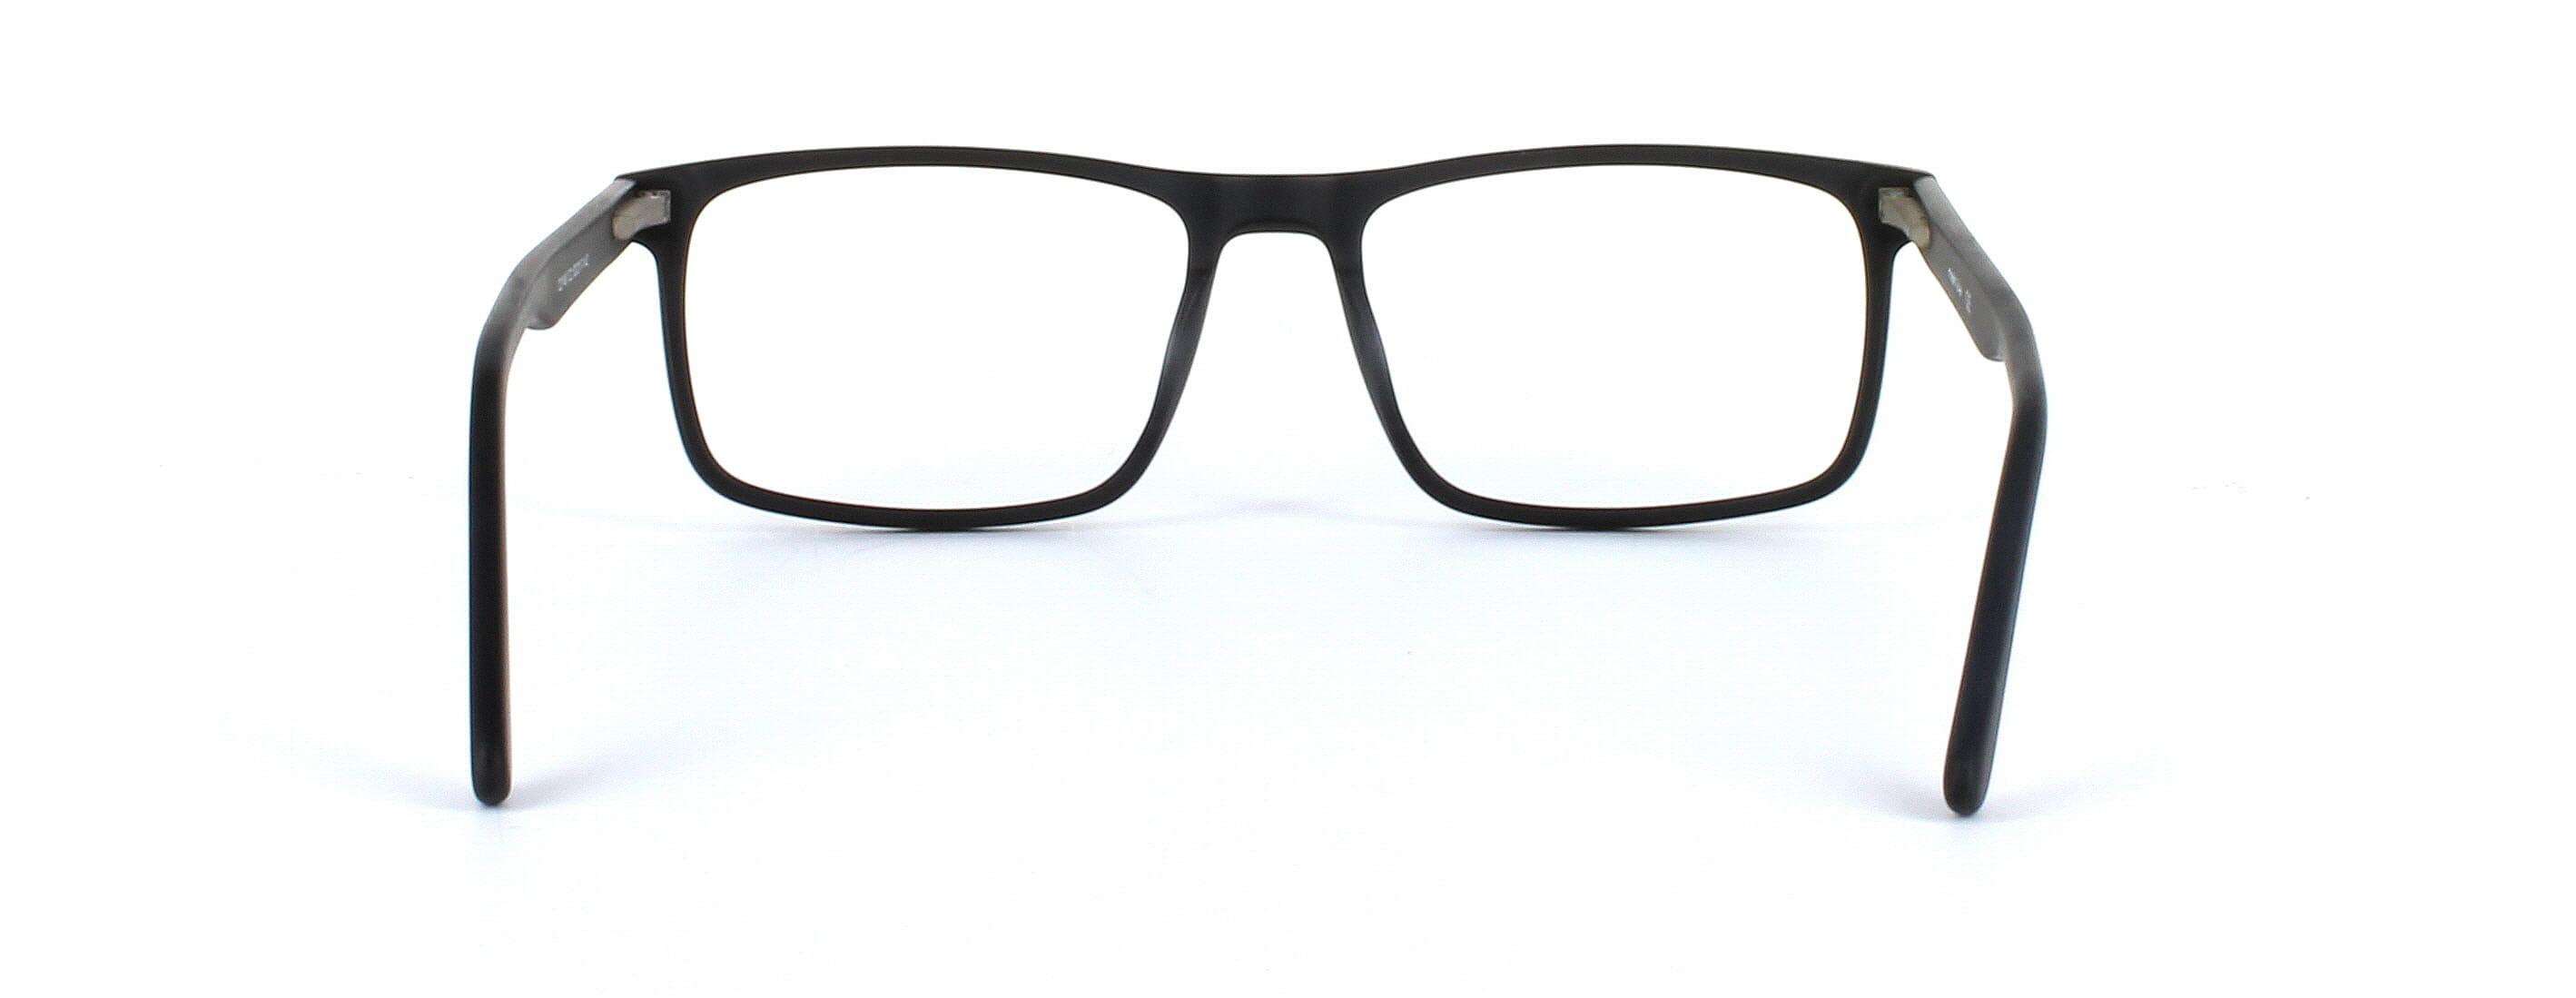 Livadia - unisex acetate glasses in matt black - image view 3